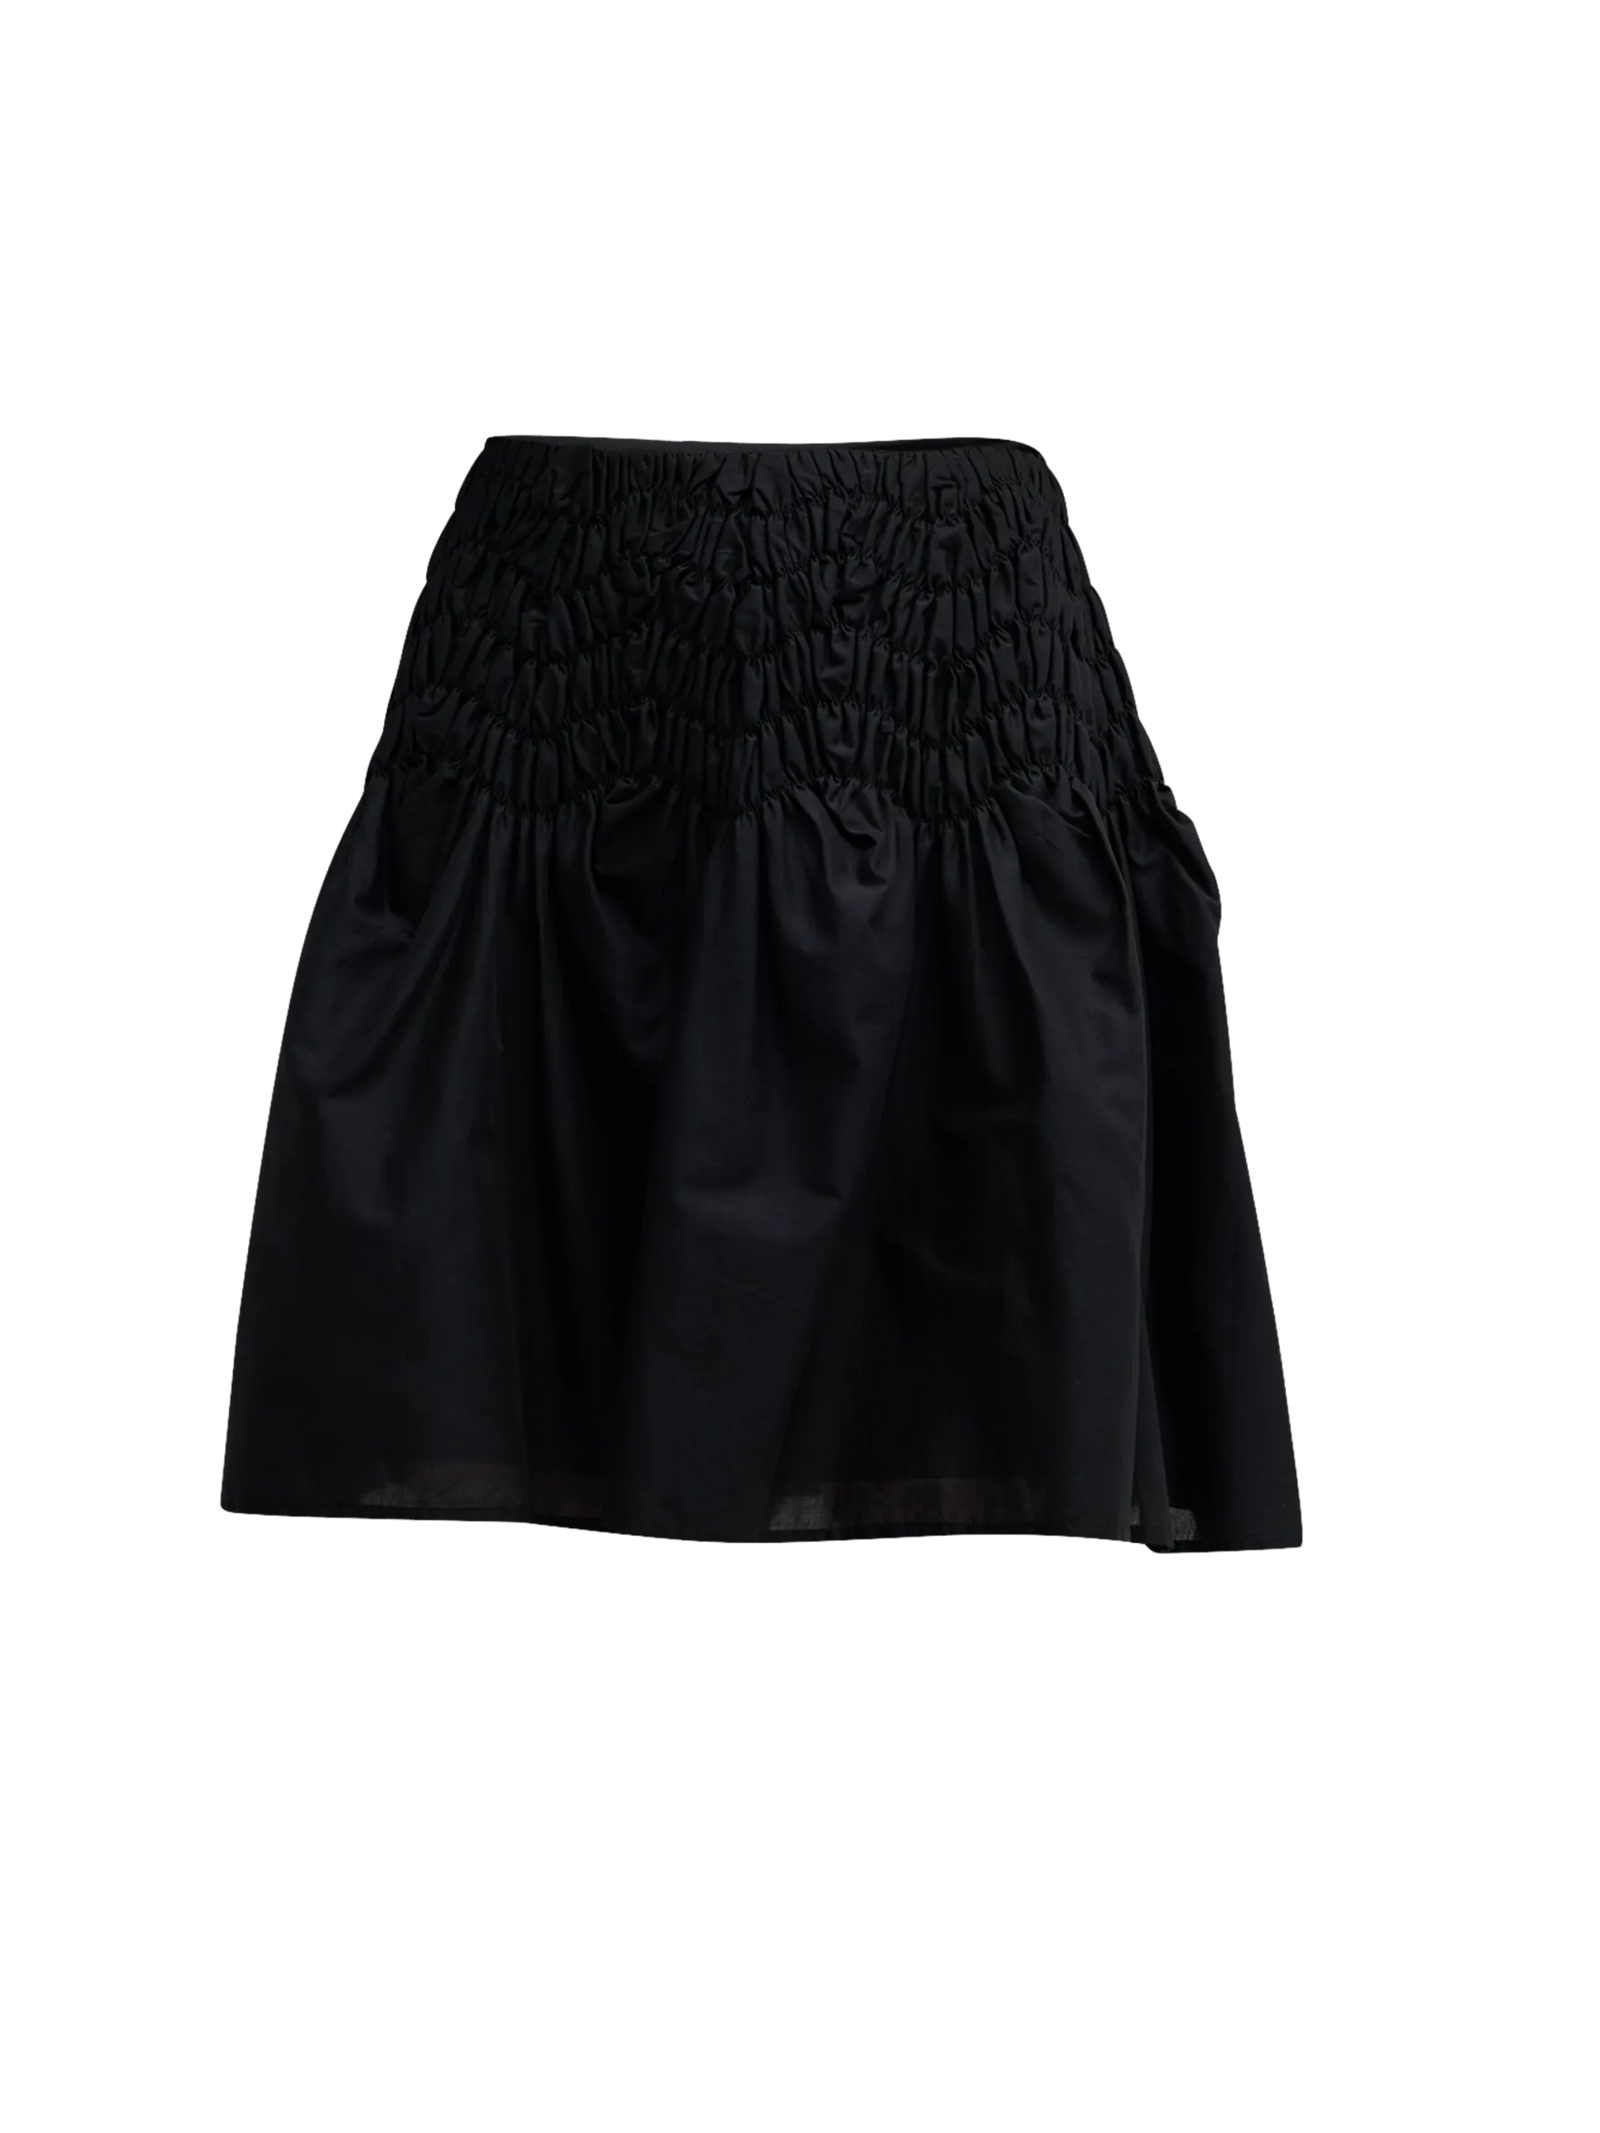 Elysian Skirt